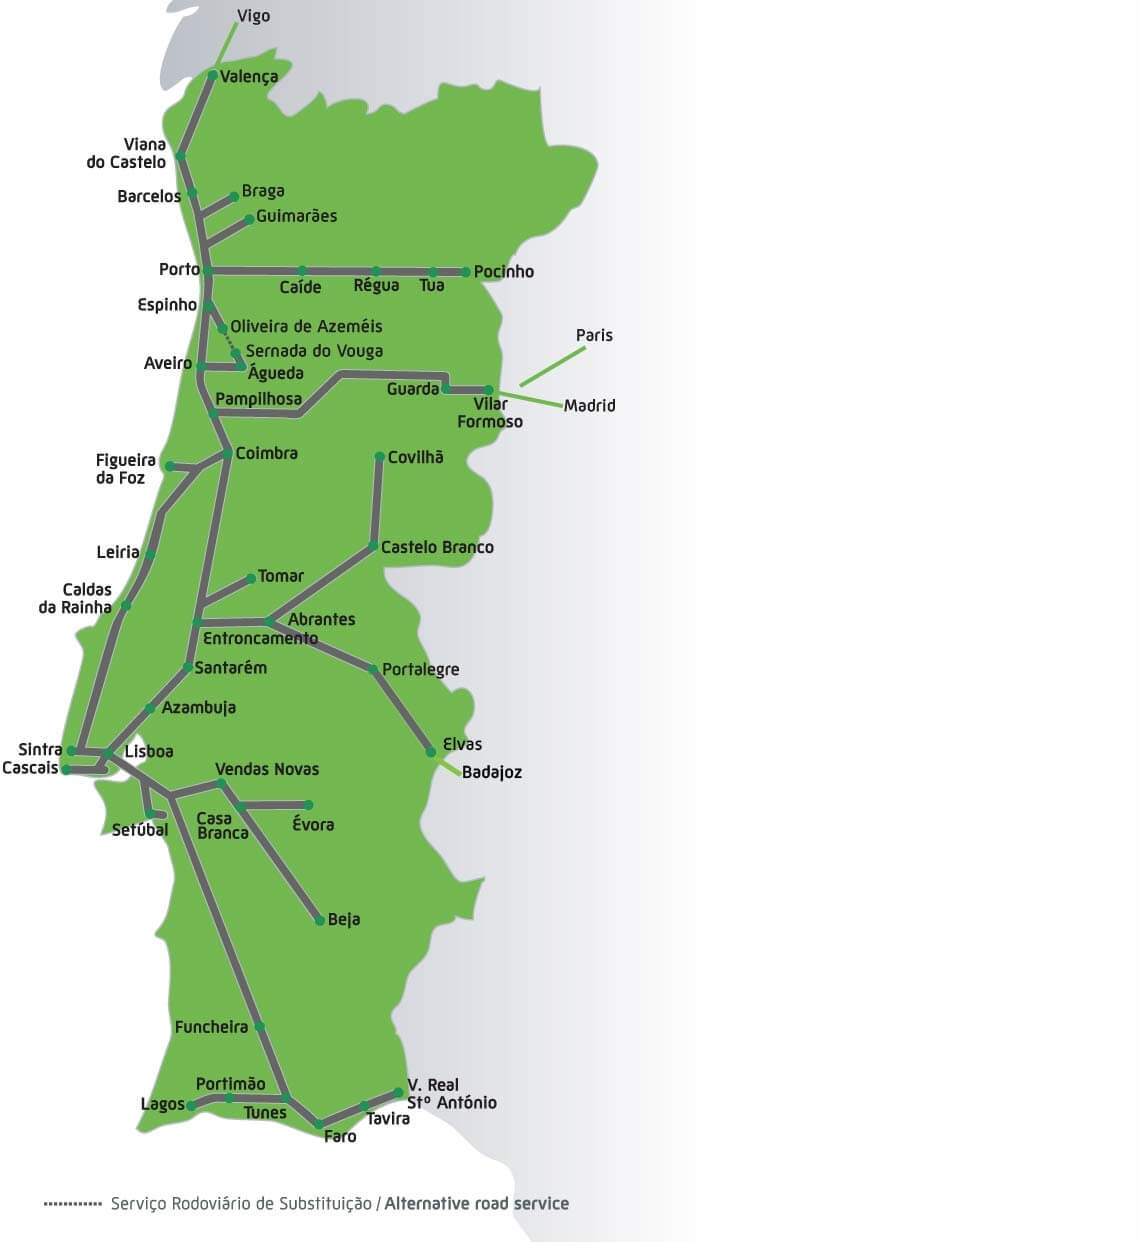 Malha completa de trens de acordo com o site oficial de transporte em Portugal